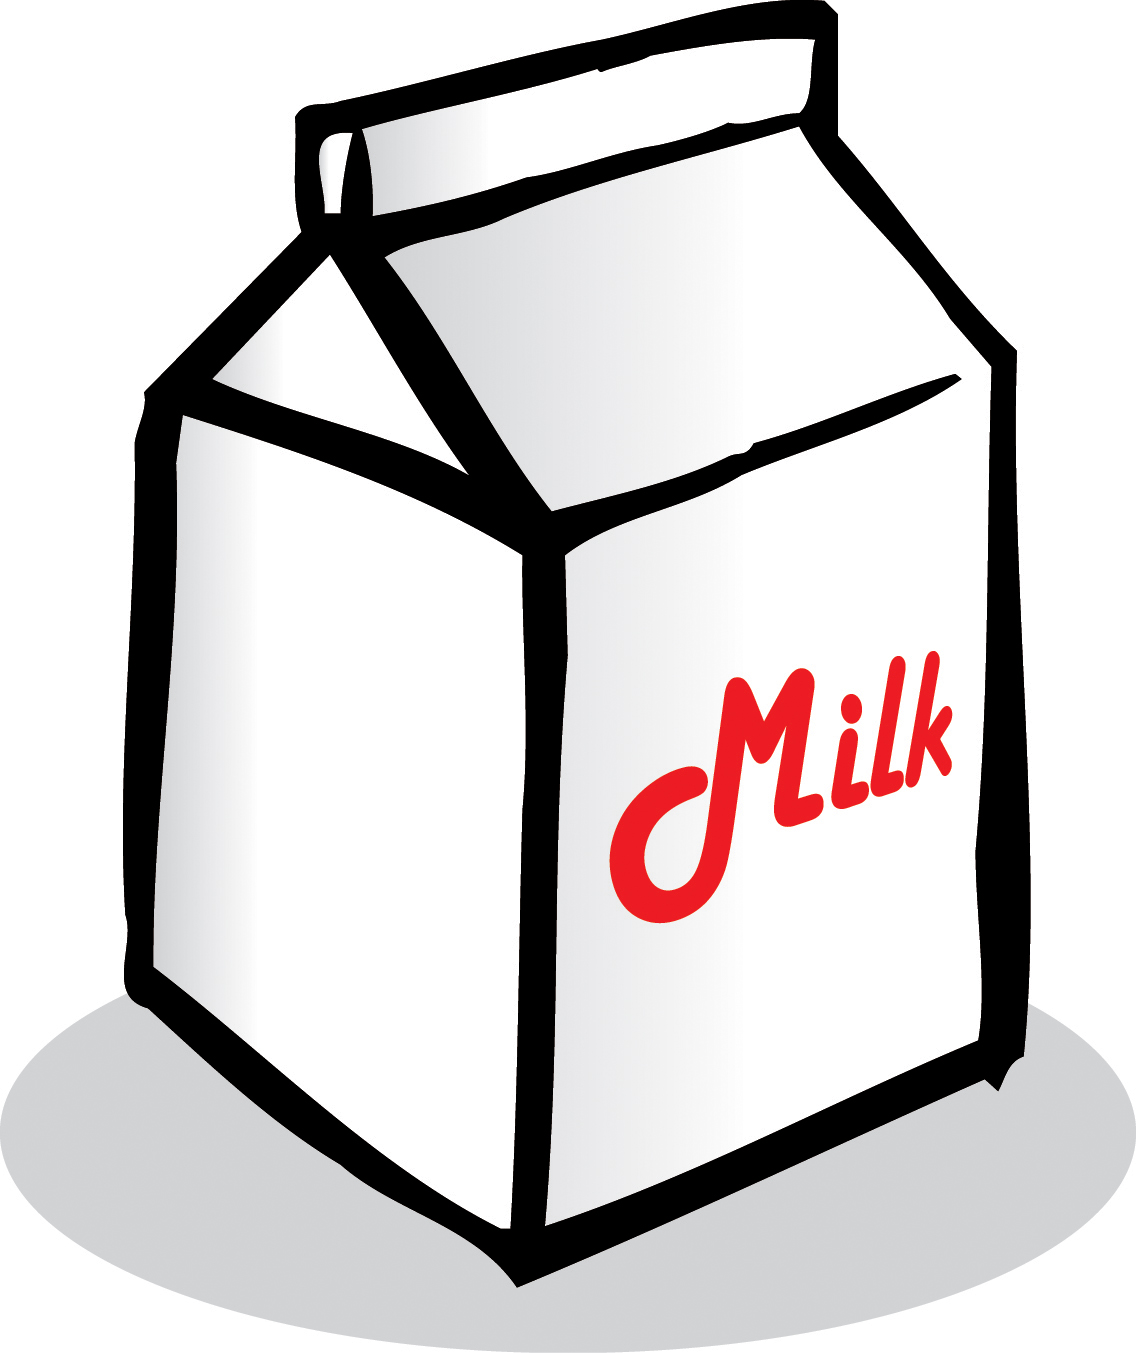 Milk Carton Clipart - Clipart library